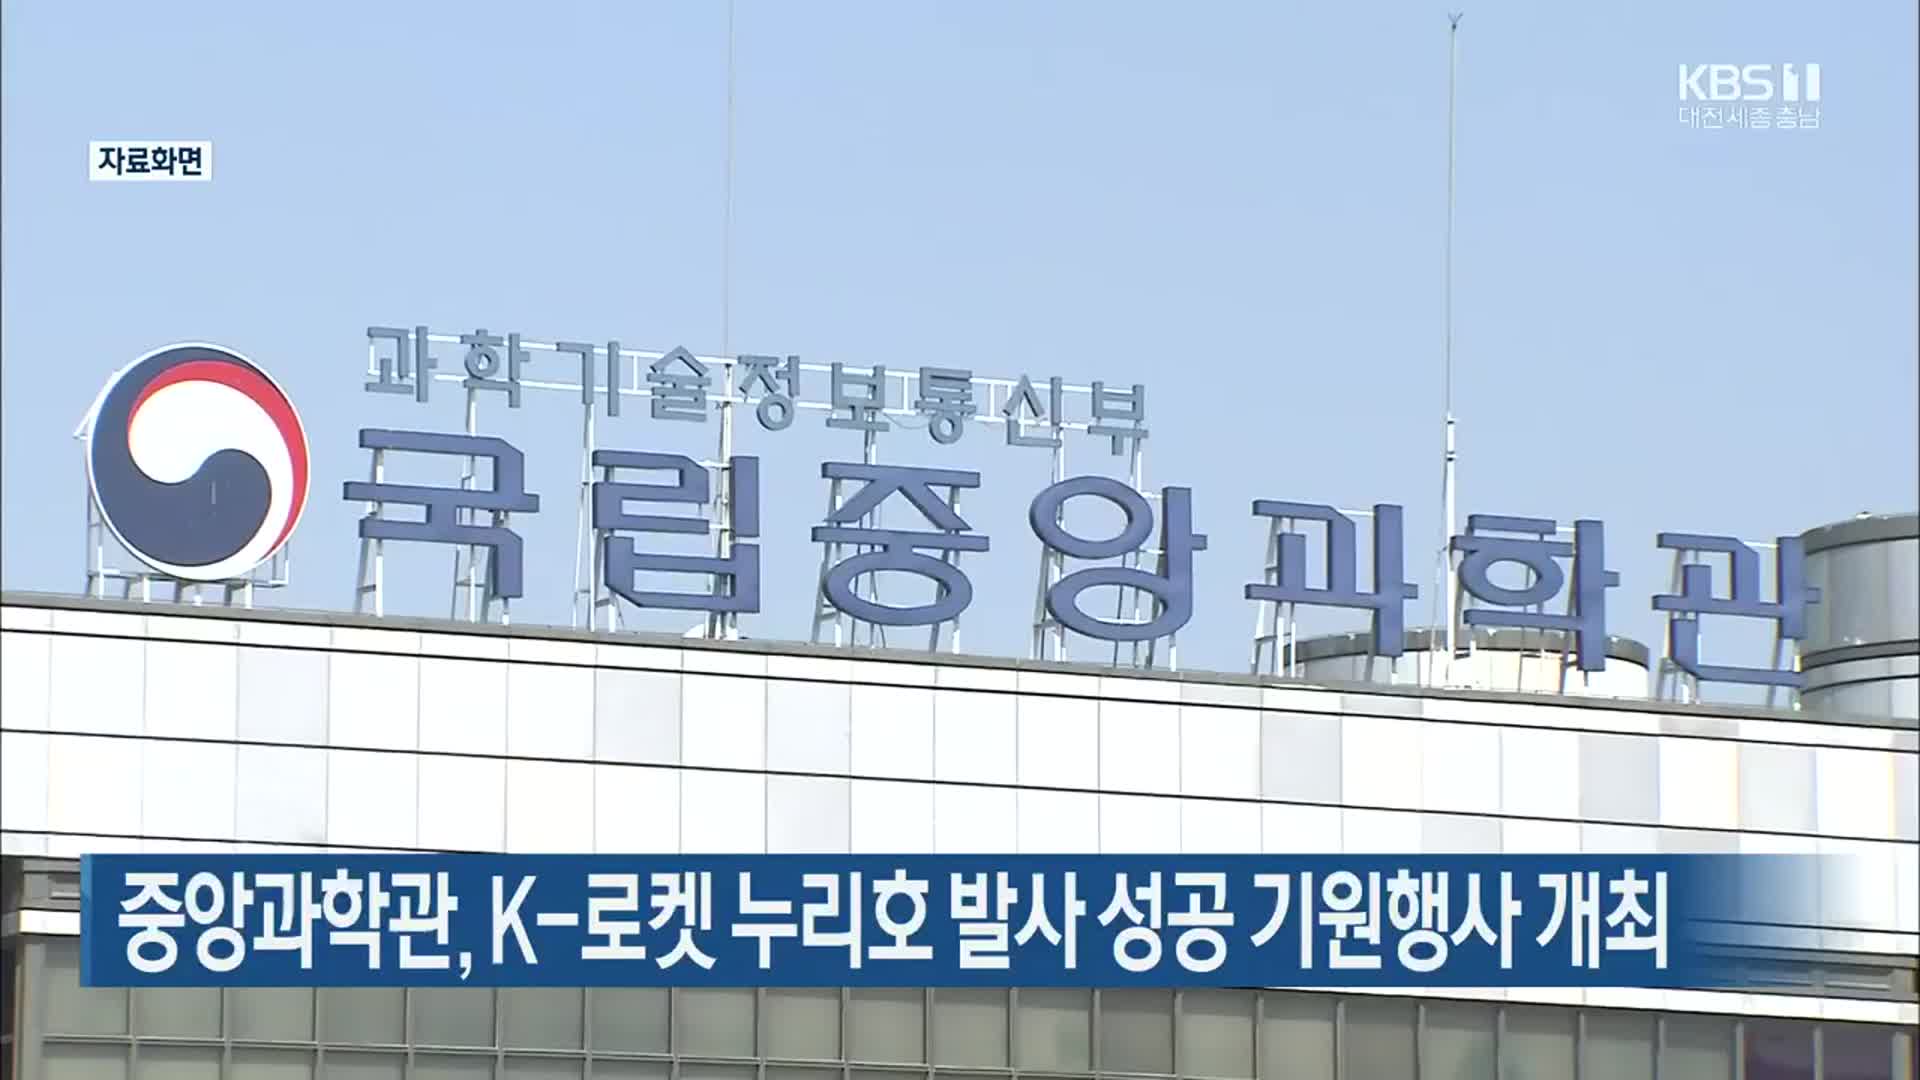 중앙과학관, K-로켓 누리호 발사 성공 기원행사 개최